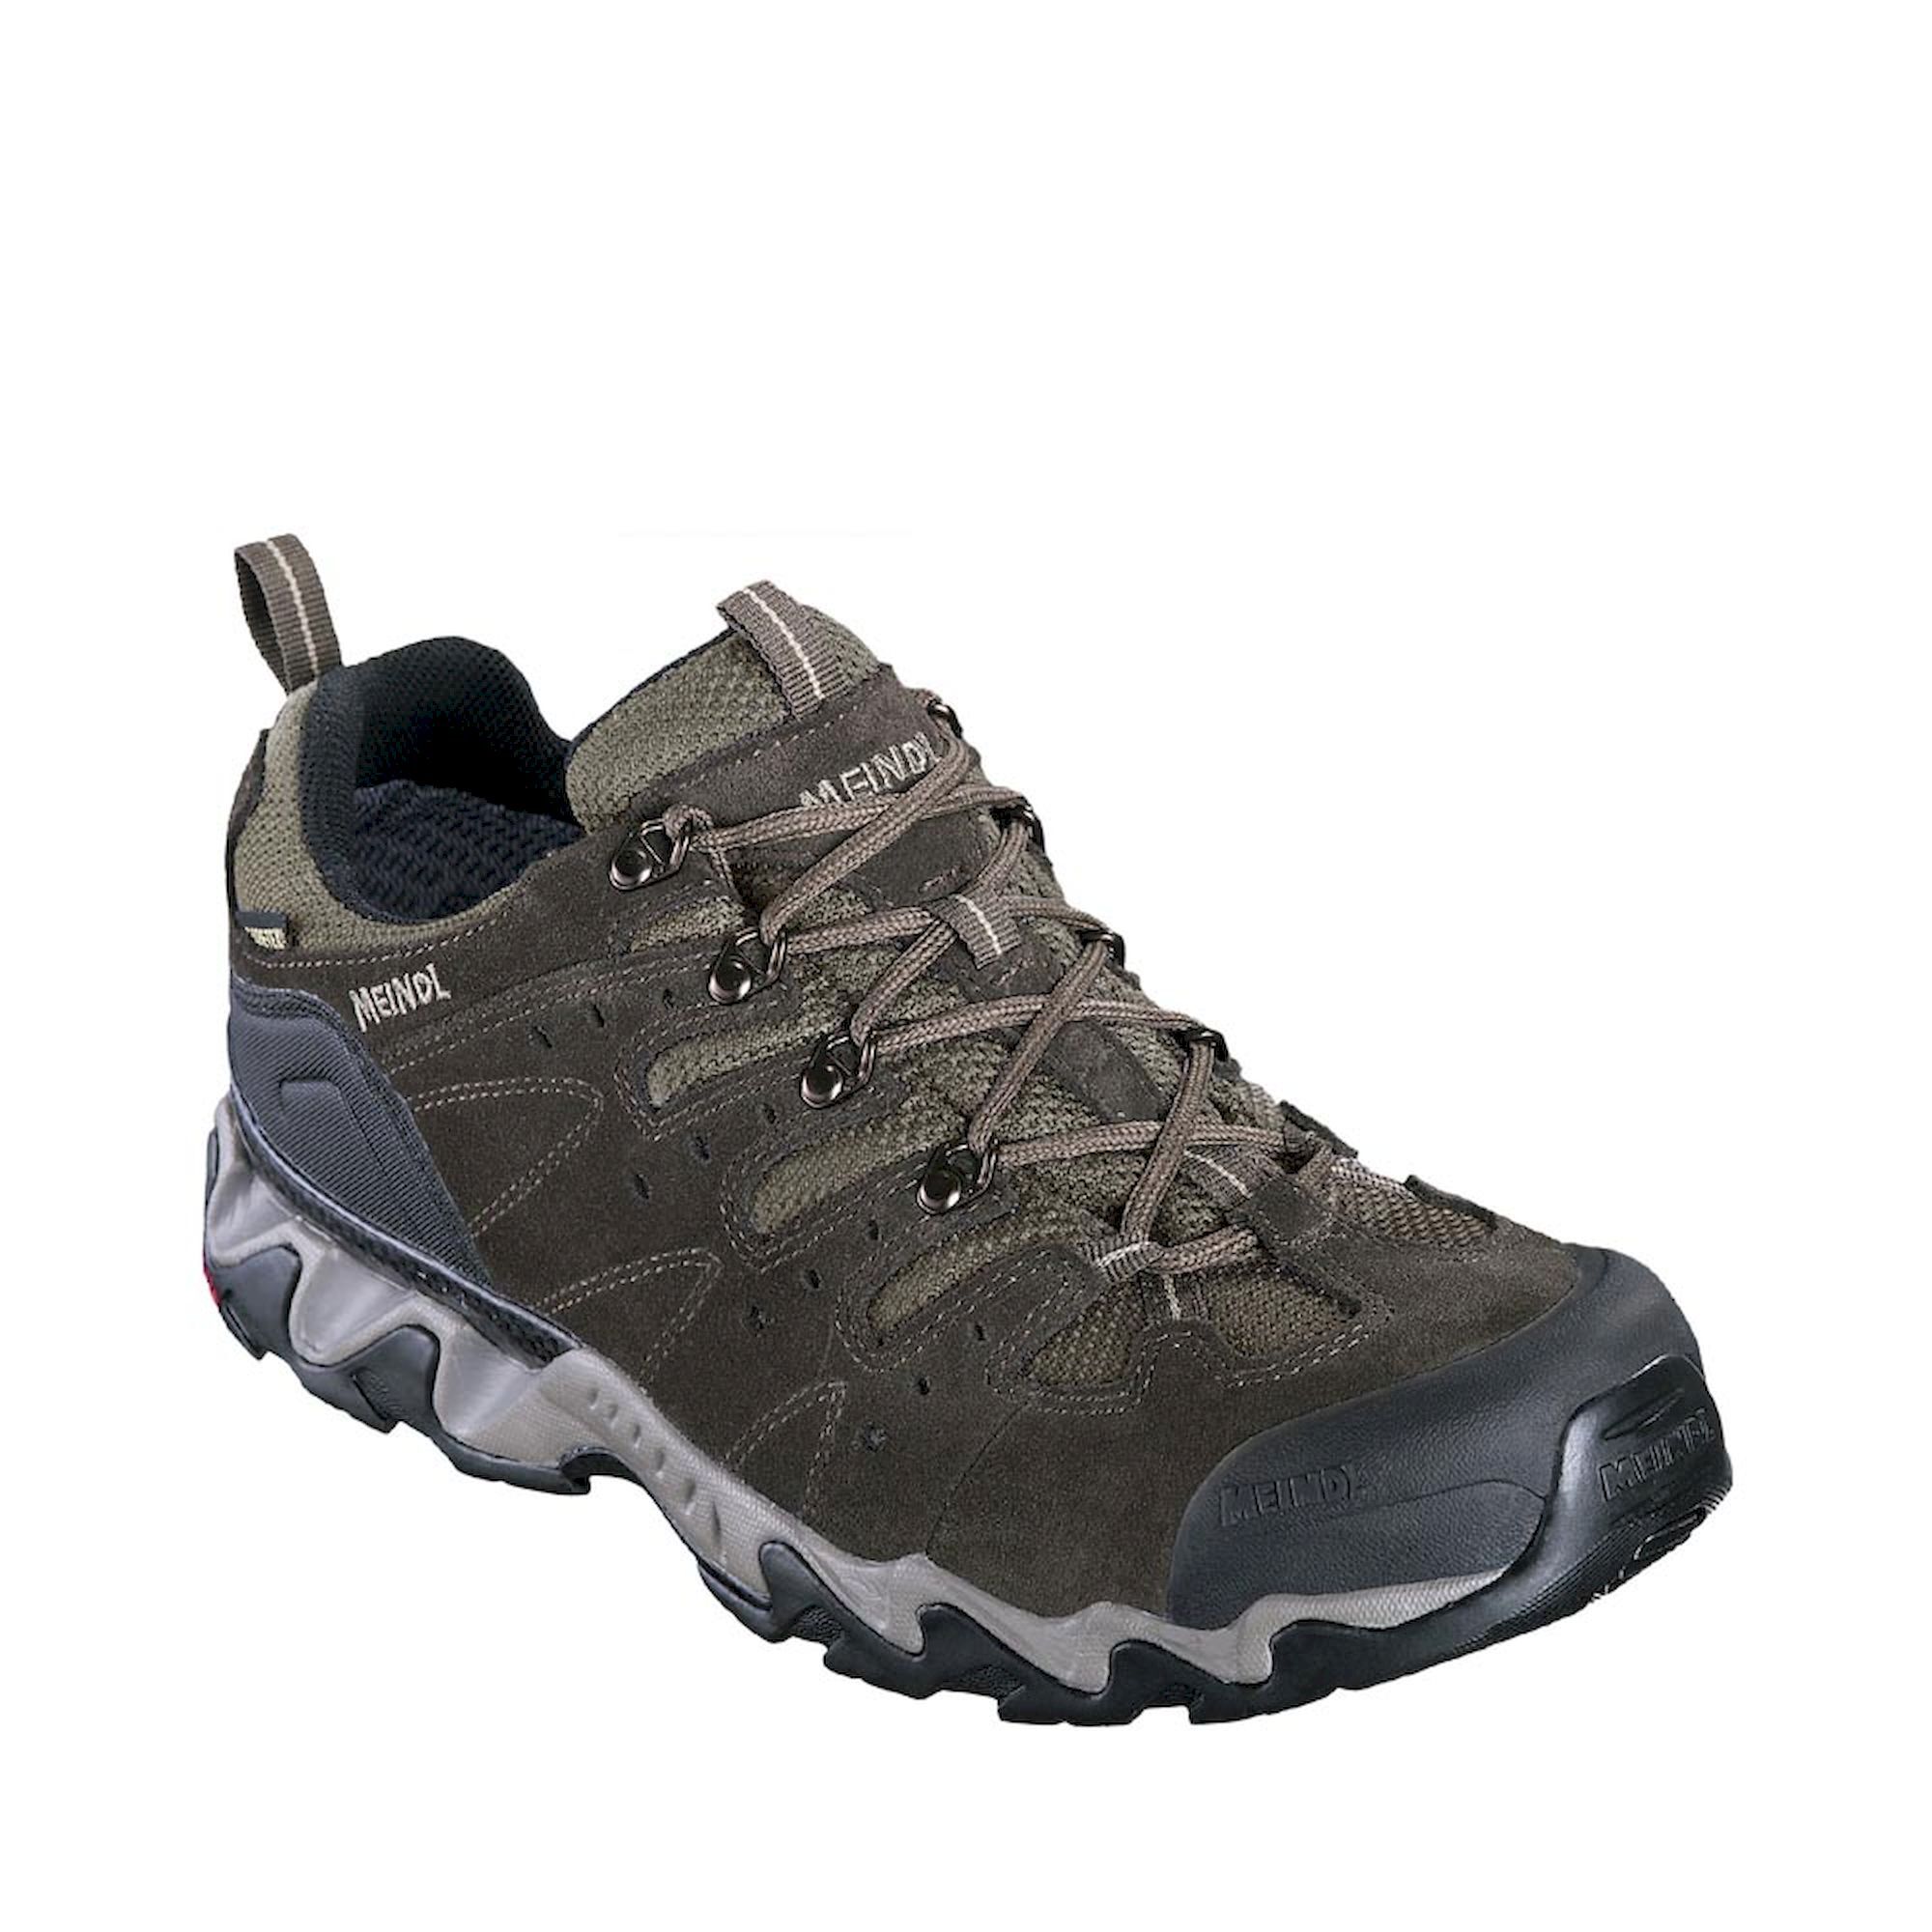 Meindl - Portland GTX® - Walking Boots - Men's